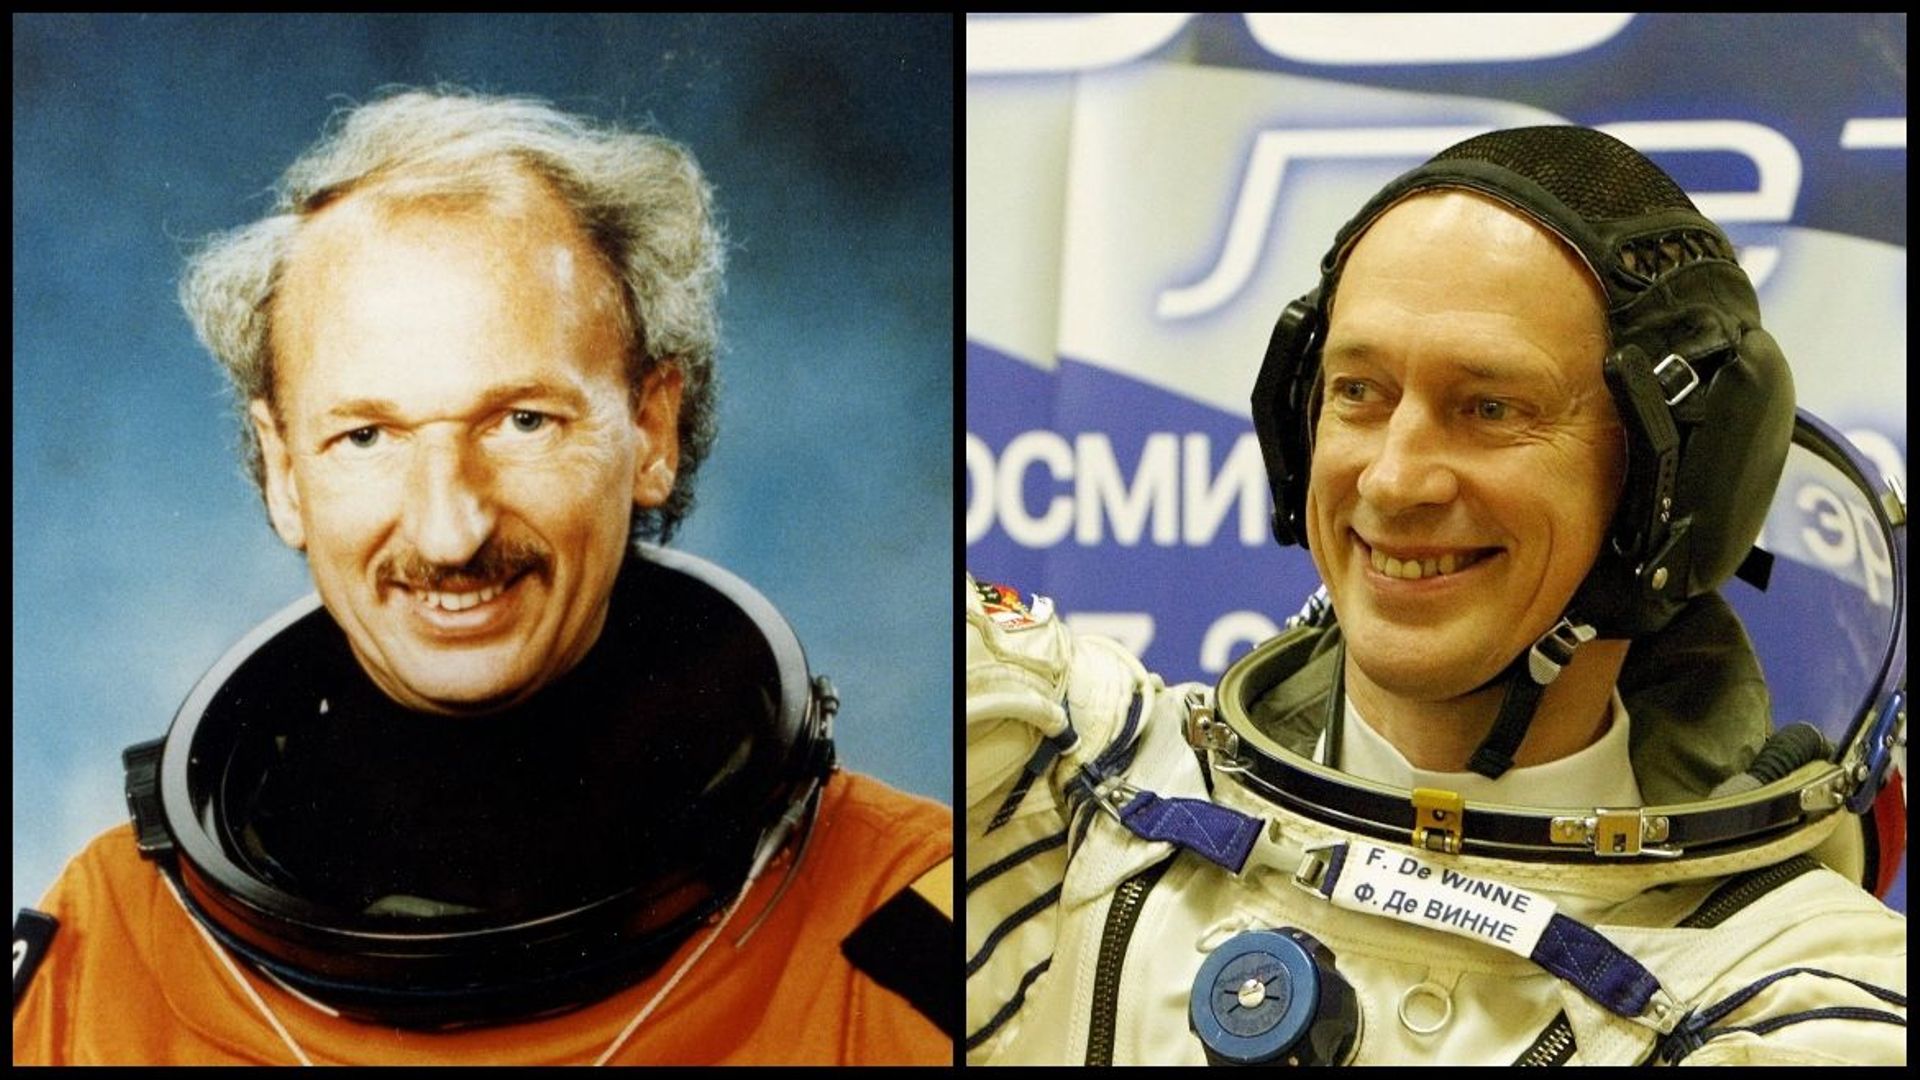 Dirk Frimout et Frank De Winne sont les seuls Belges à ce jour à avoir voyagé dans l'espace 